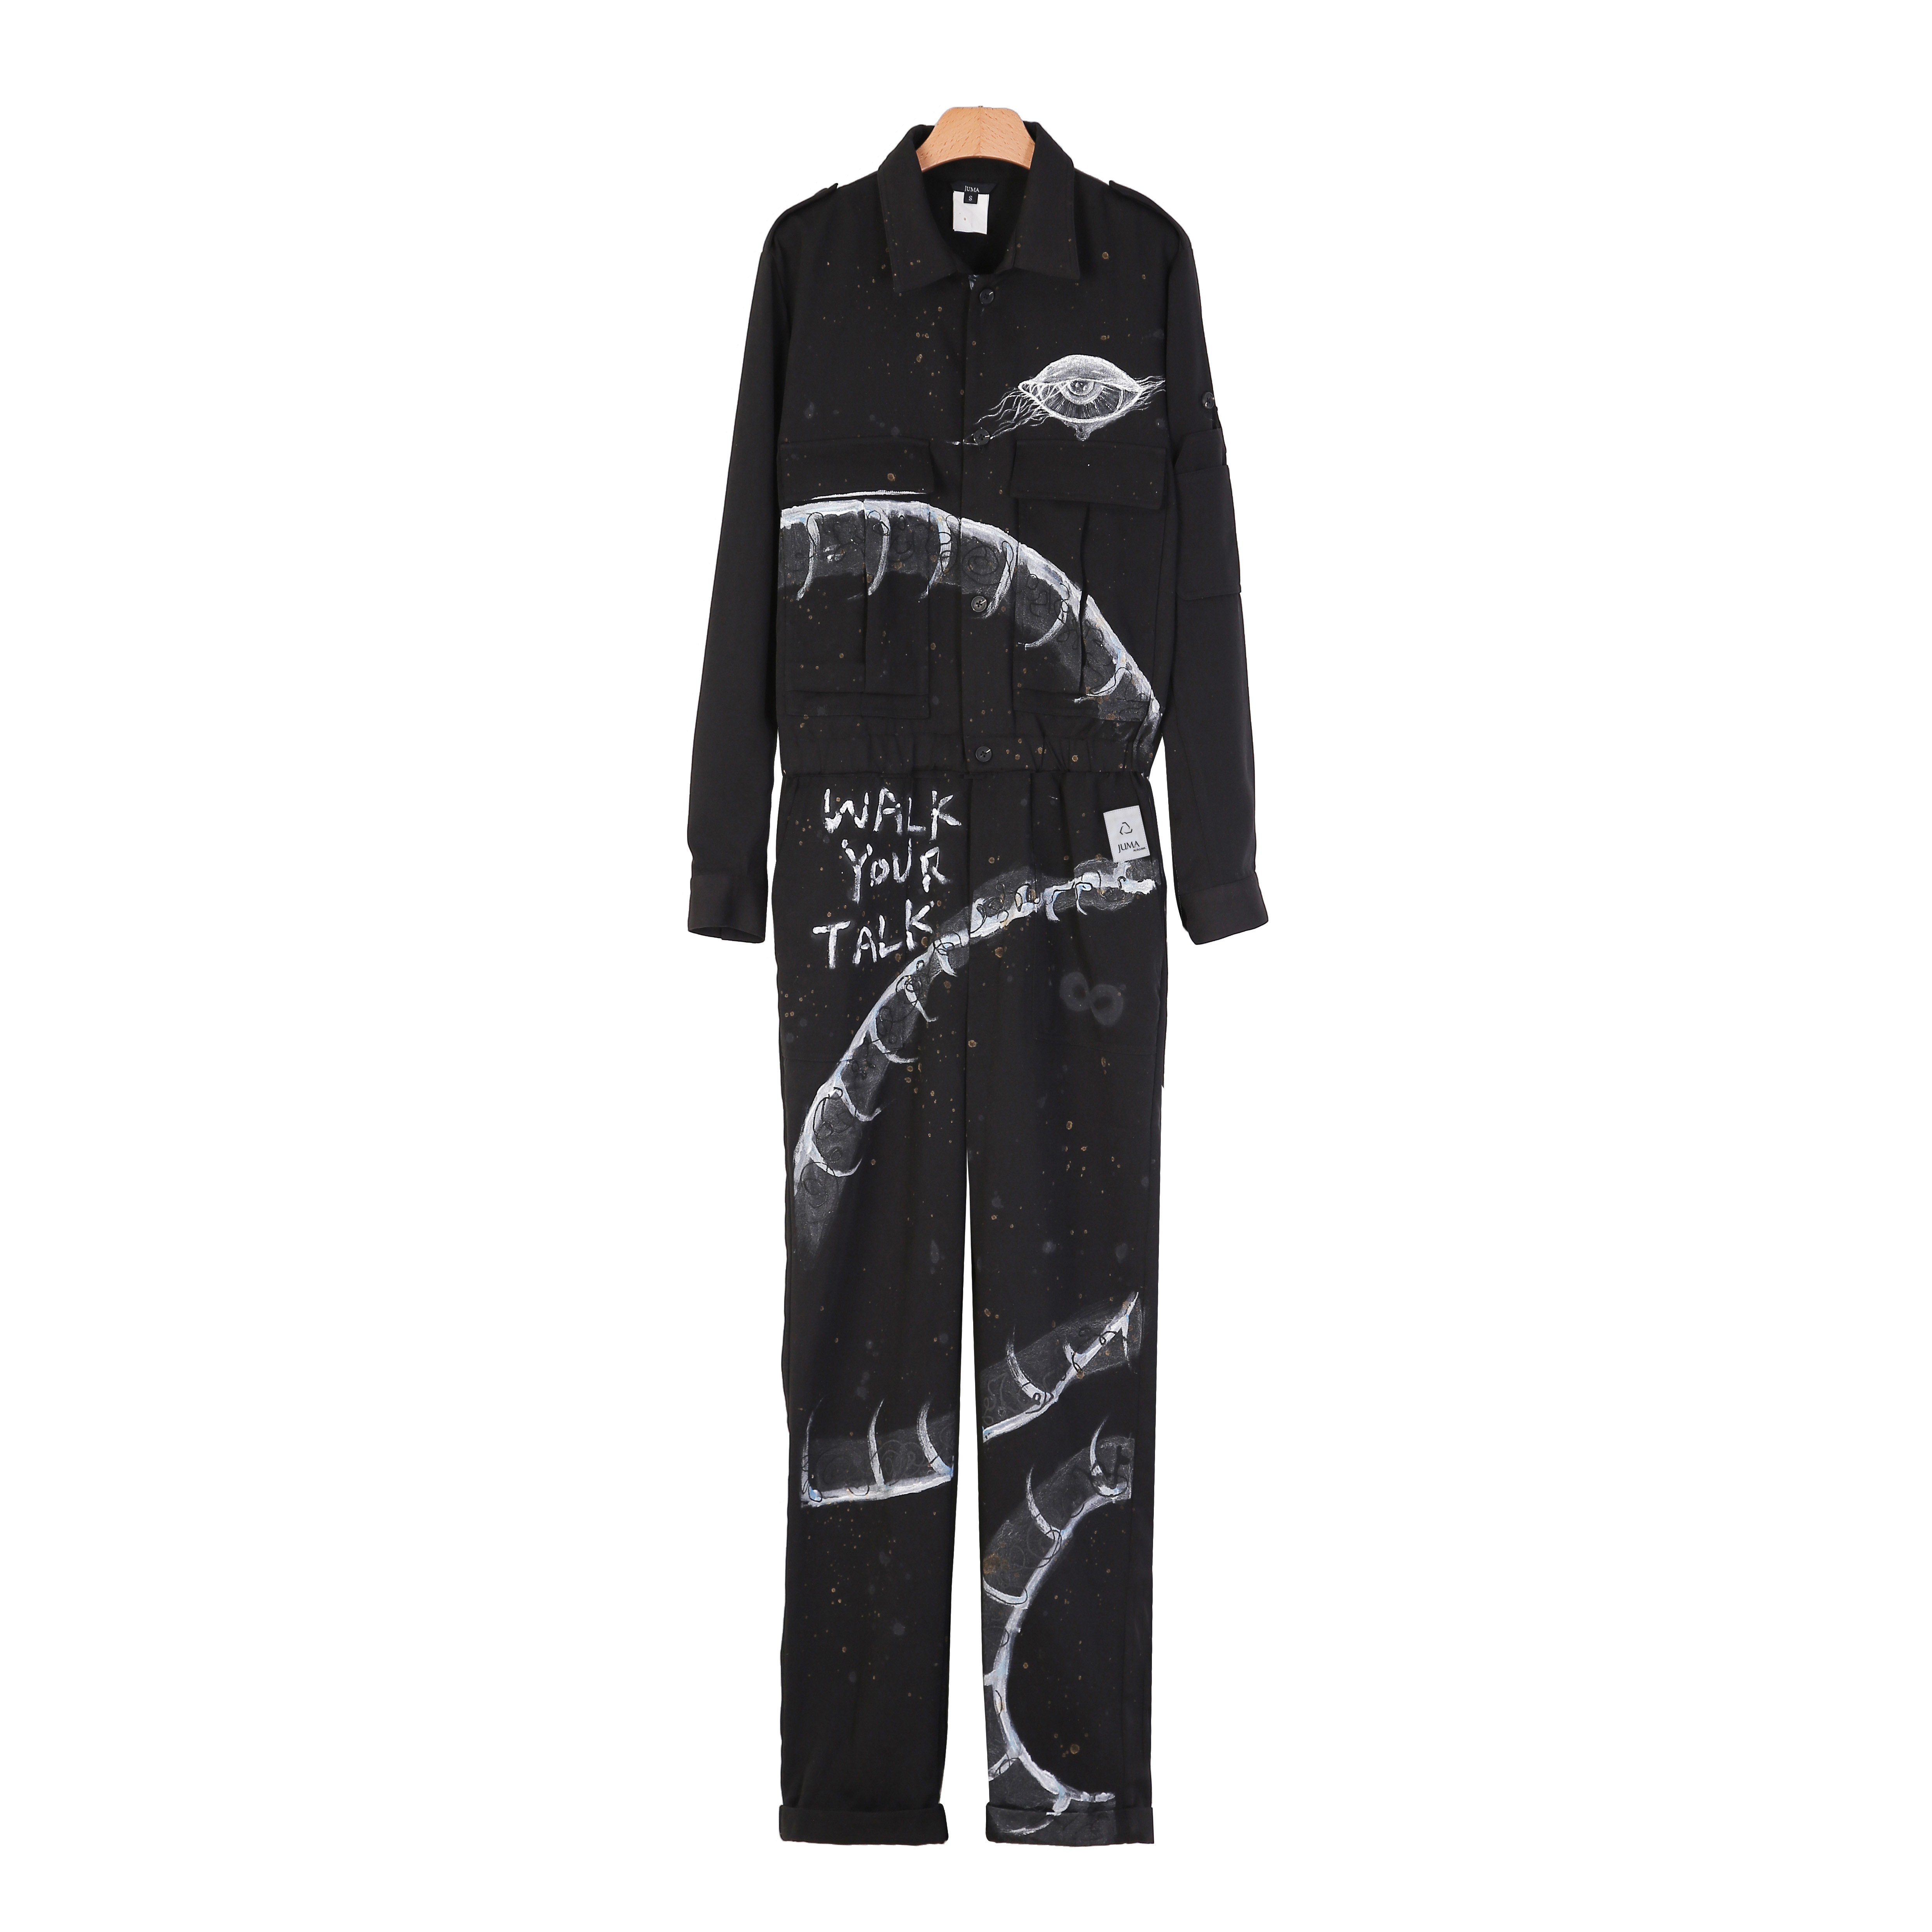 Shuhs 连衣裙 - 15 个回收水瓶 - 黑白色｜Shuhs Printed Slip Dress - 15 Recycled Water Bottles - Black & White